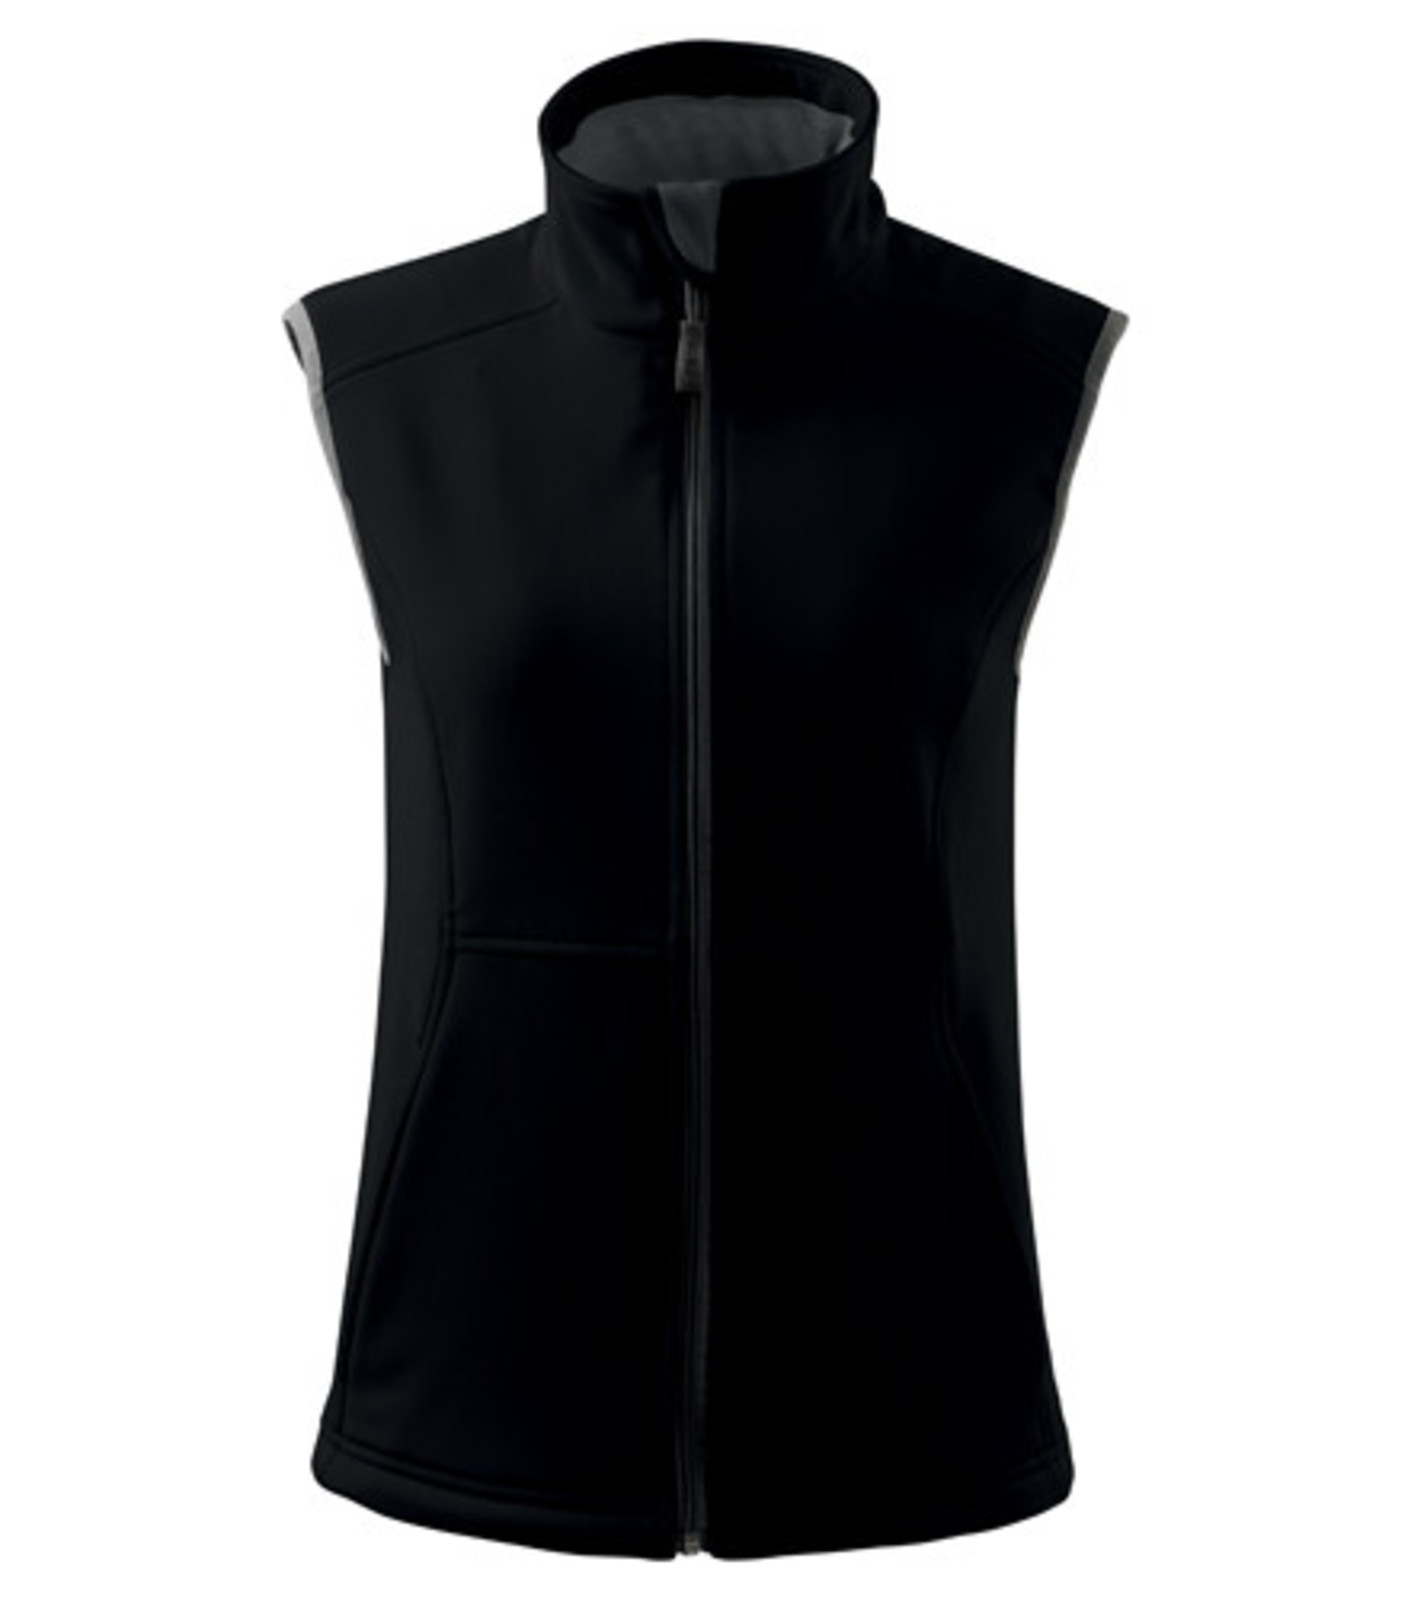 Dámska softshellová vesta Adler Vision 516 - veľkosť: L, farba: čierna